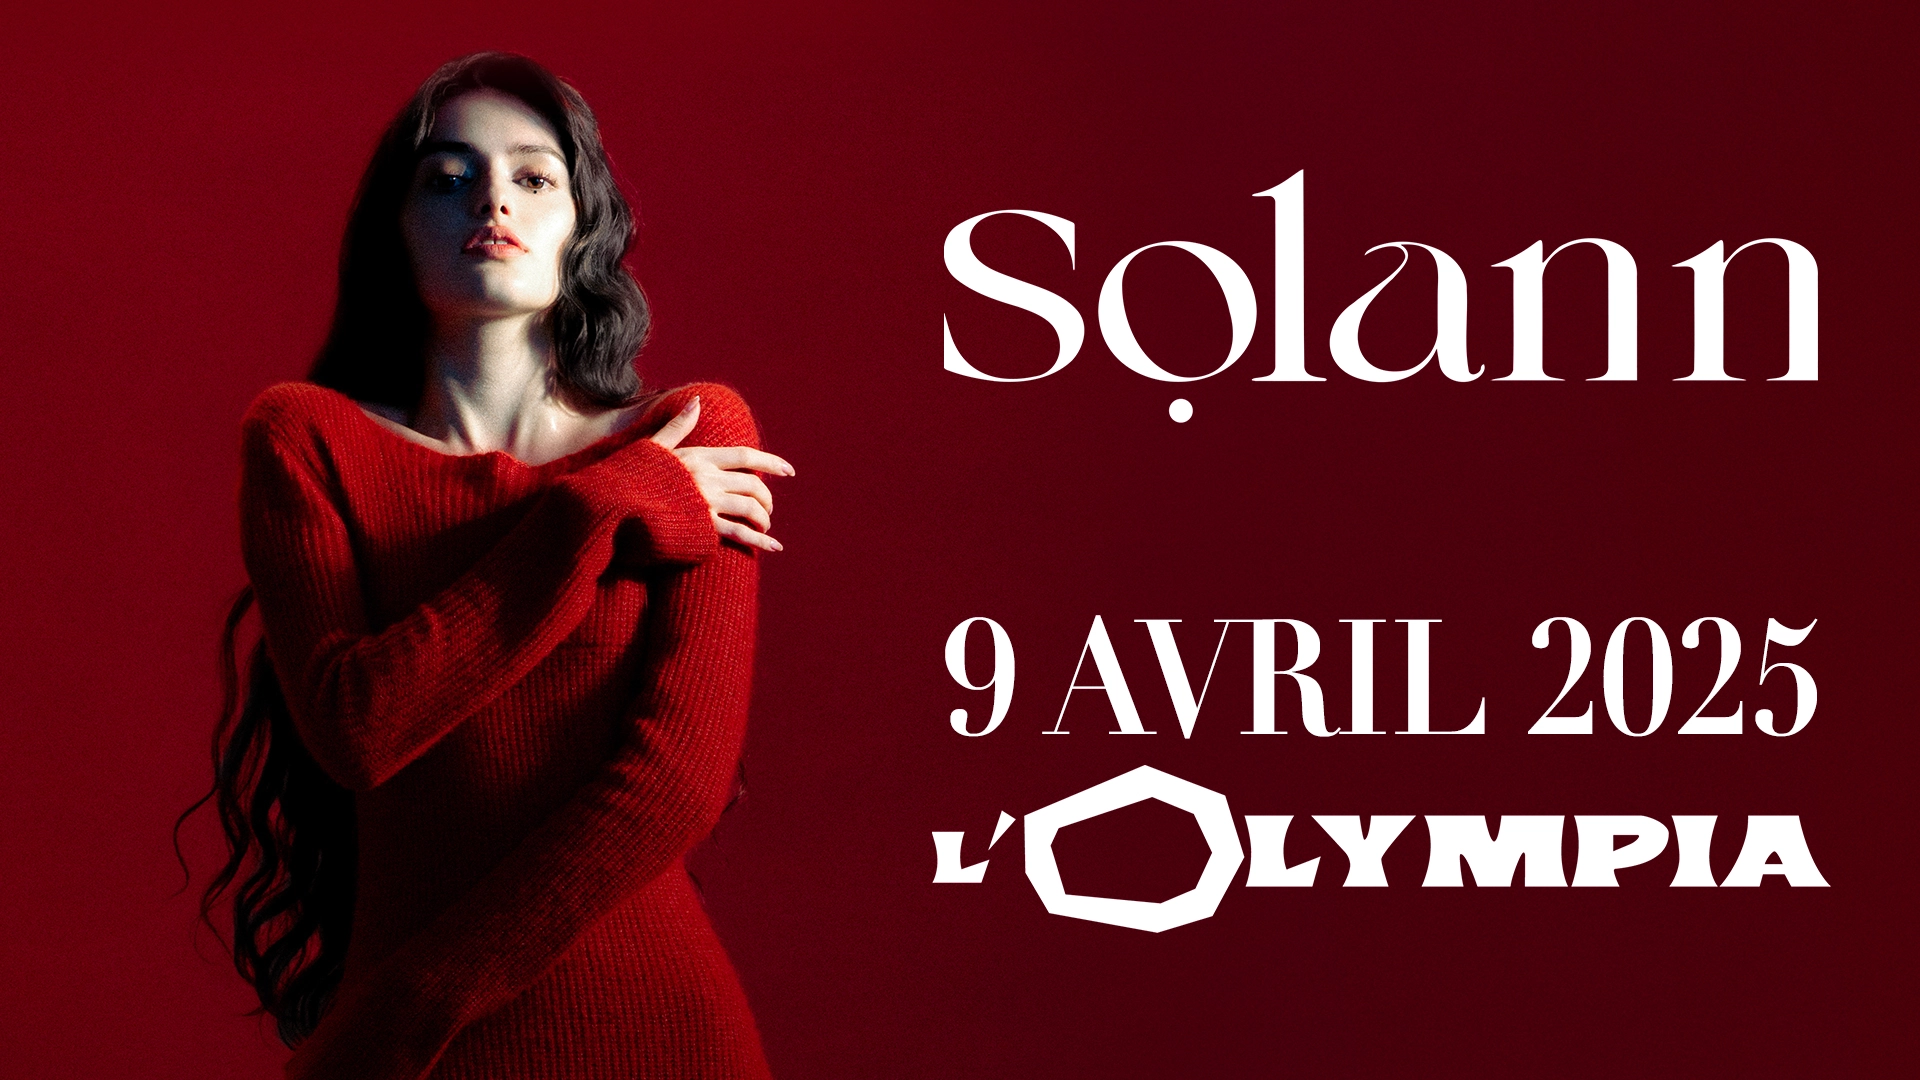 Concert Solann à Paris (Olympia) du 09 avril 2025